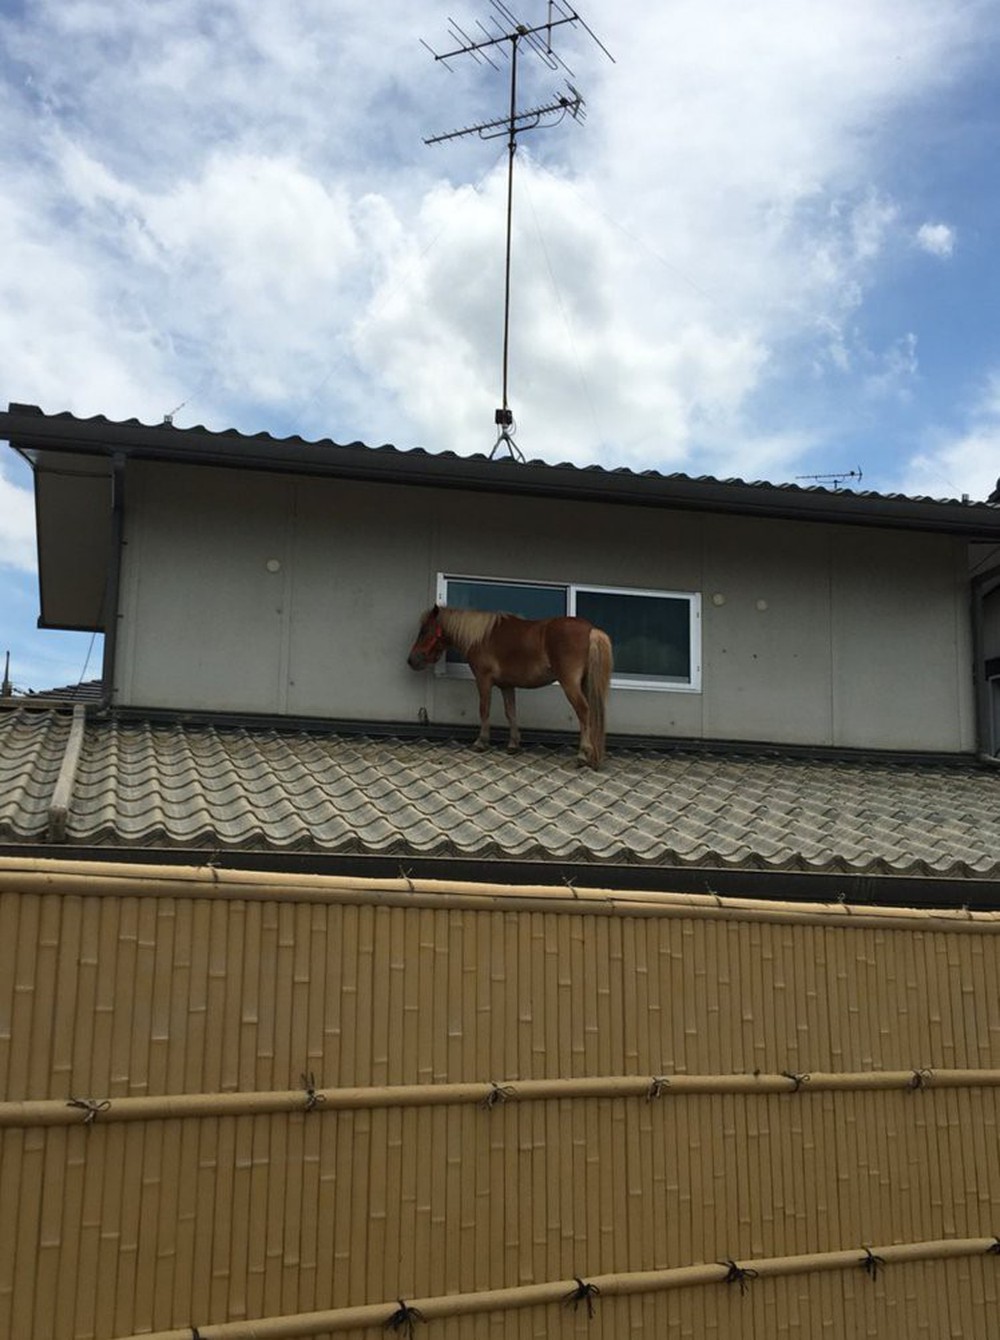 Chú ngựa đi lạc lên... mái nhà sau trận lũ quét ở Nhật Bản - Ảnh 1.